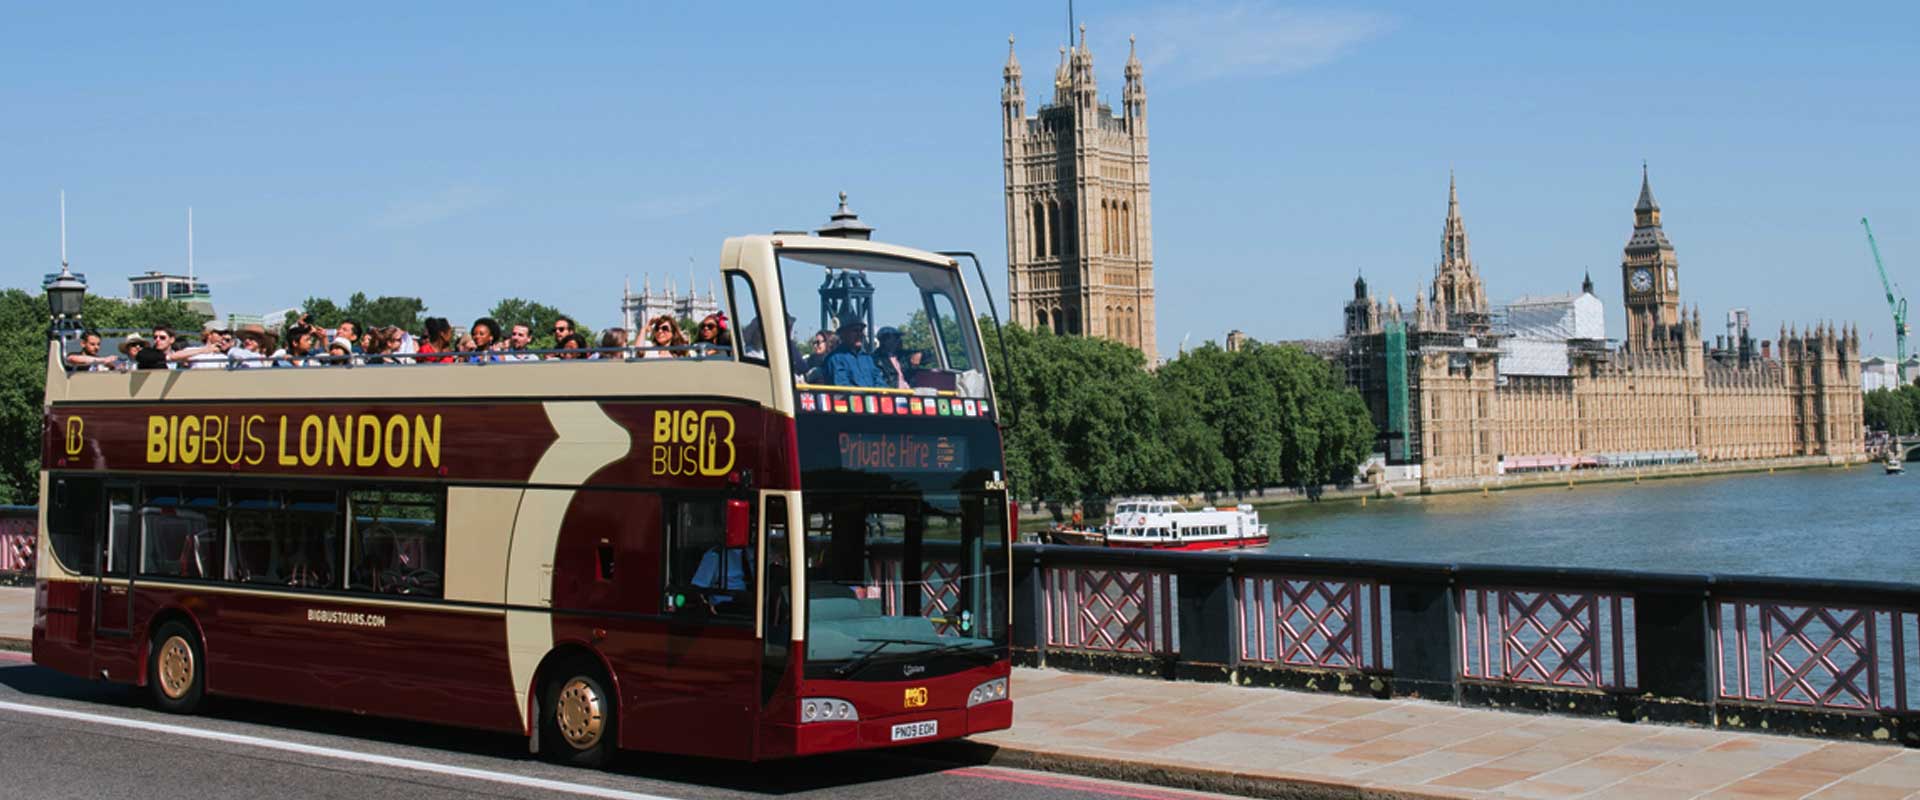 london bus tour big bus